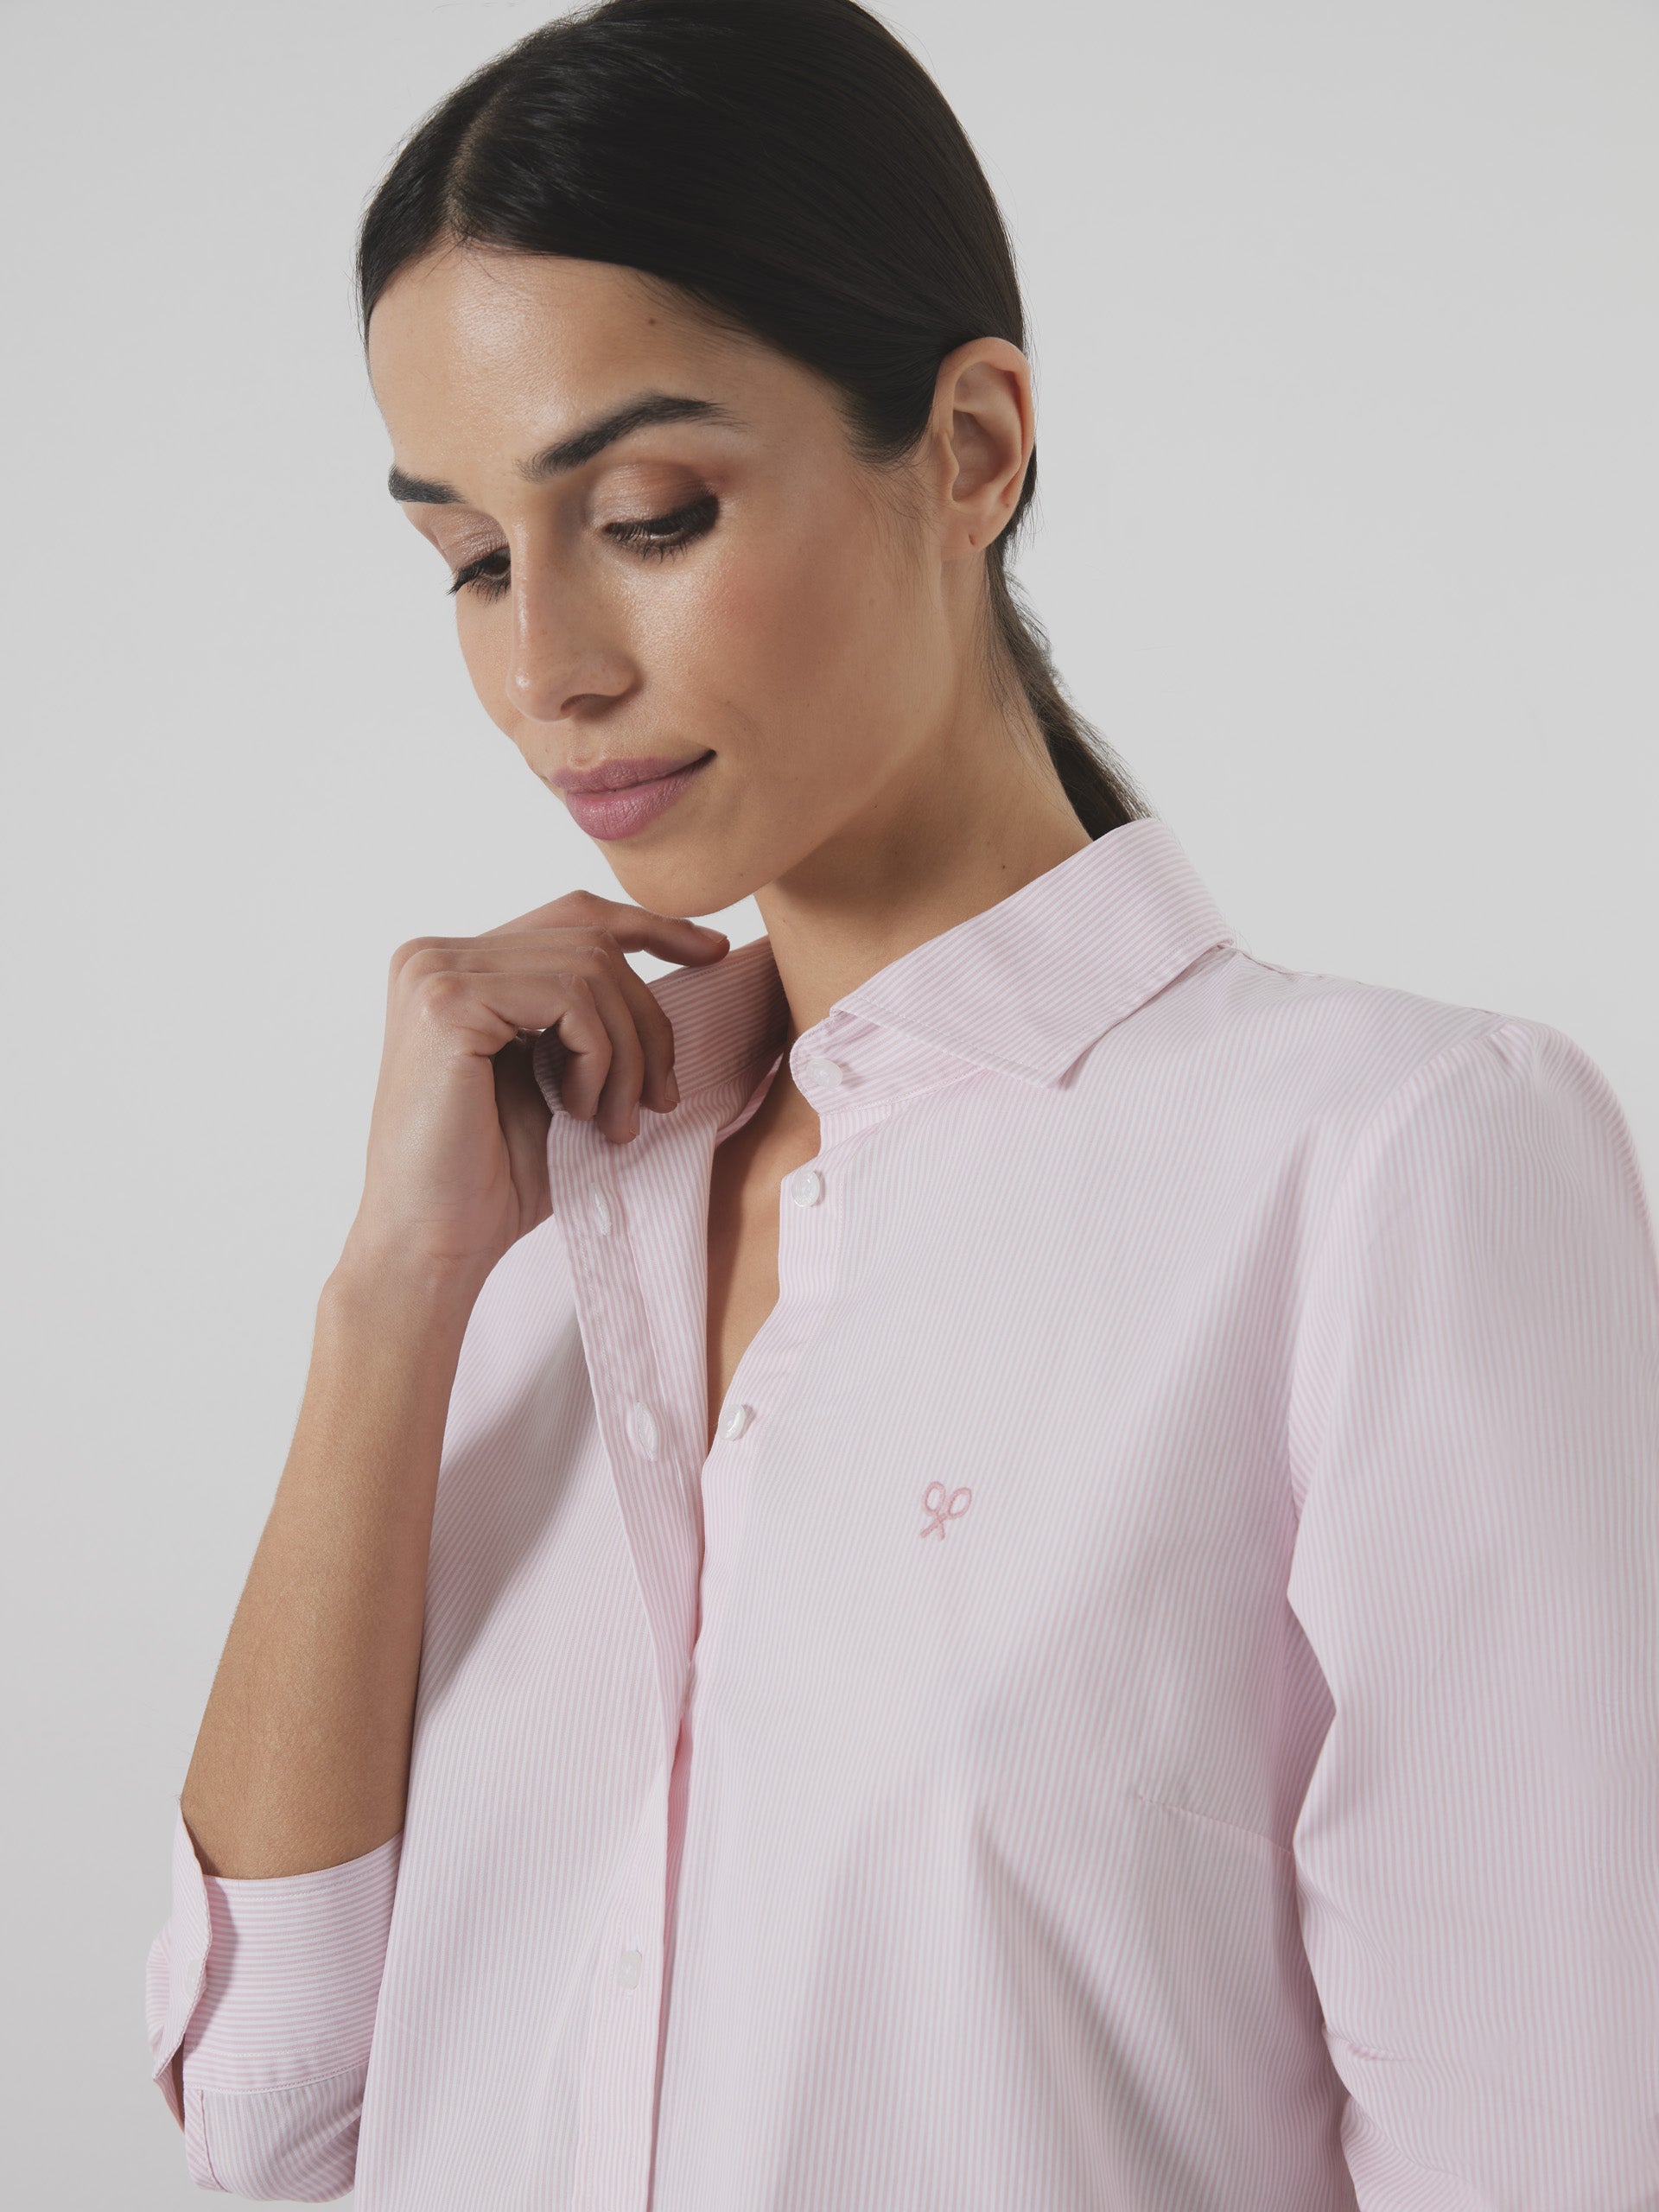 Women's unique pink striped shirt